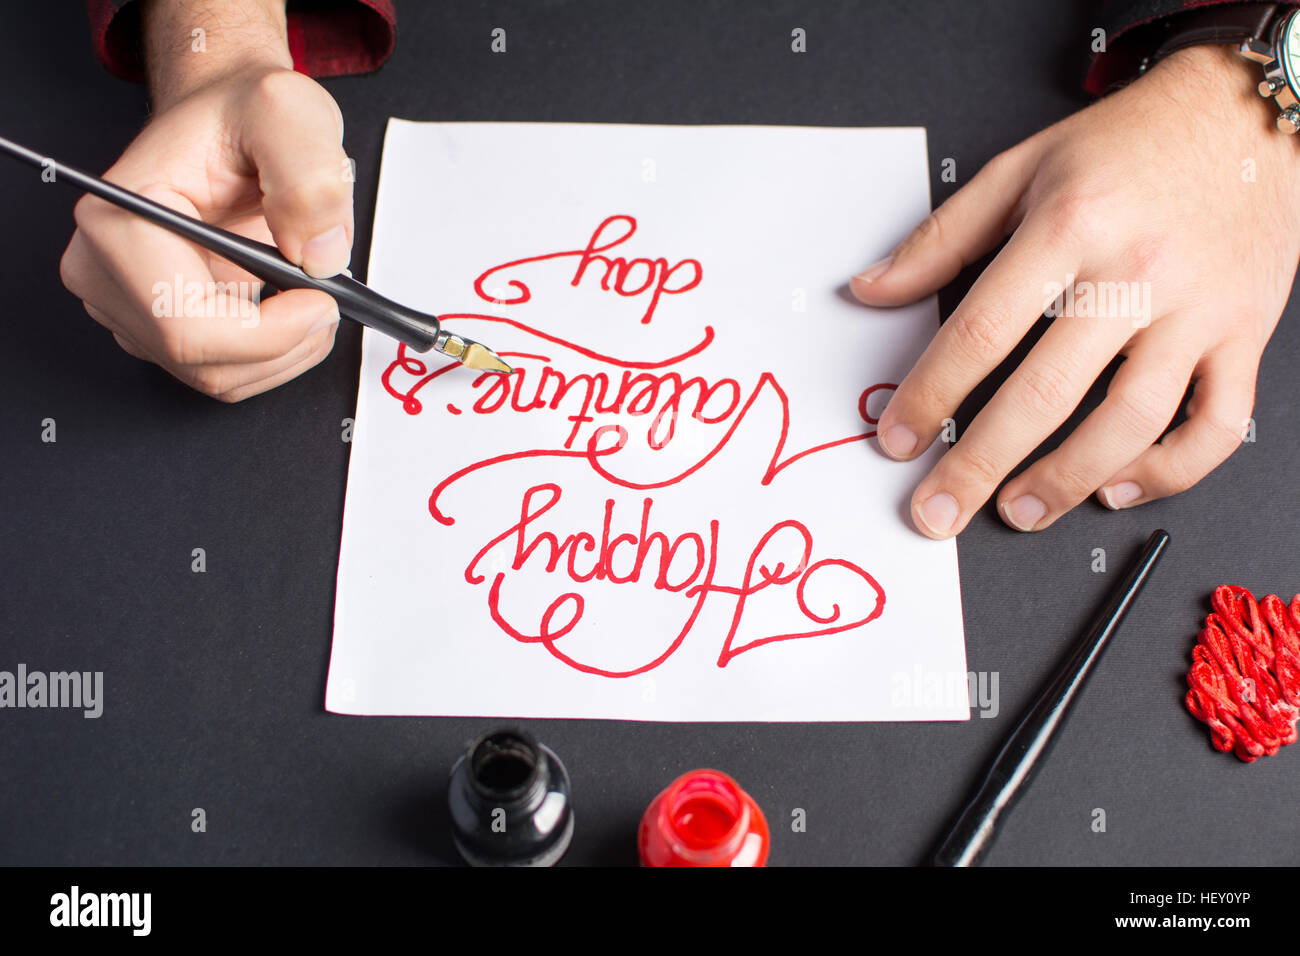 Mani maschio scrivendo un il giorno di San Valentino card calligraphy Foto Stock